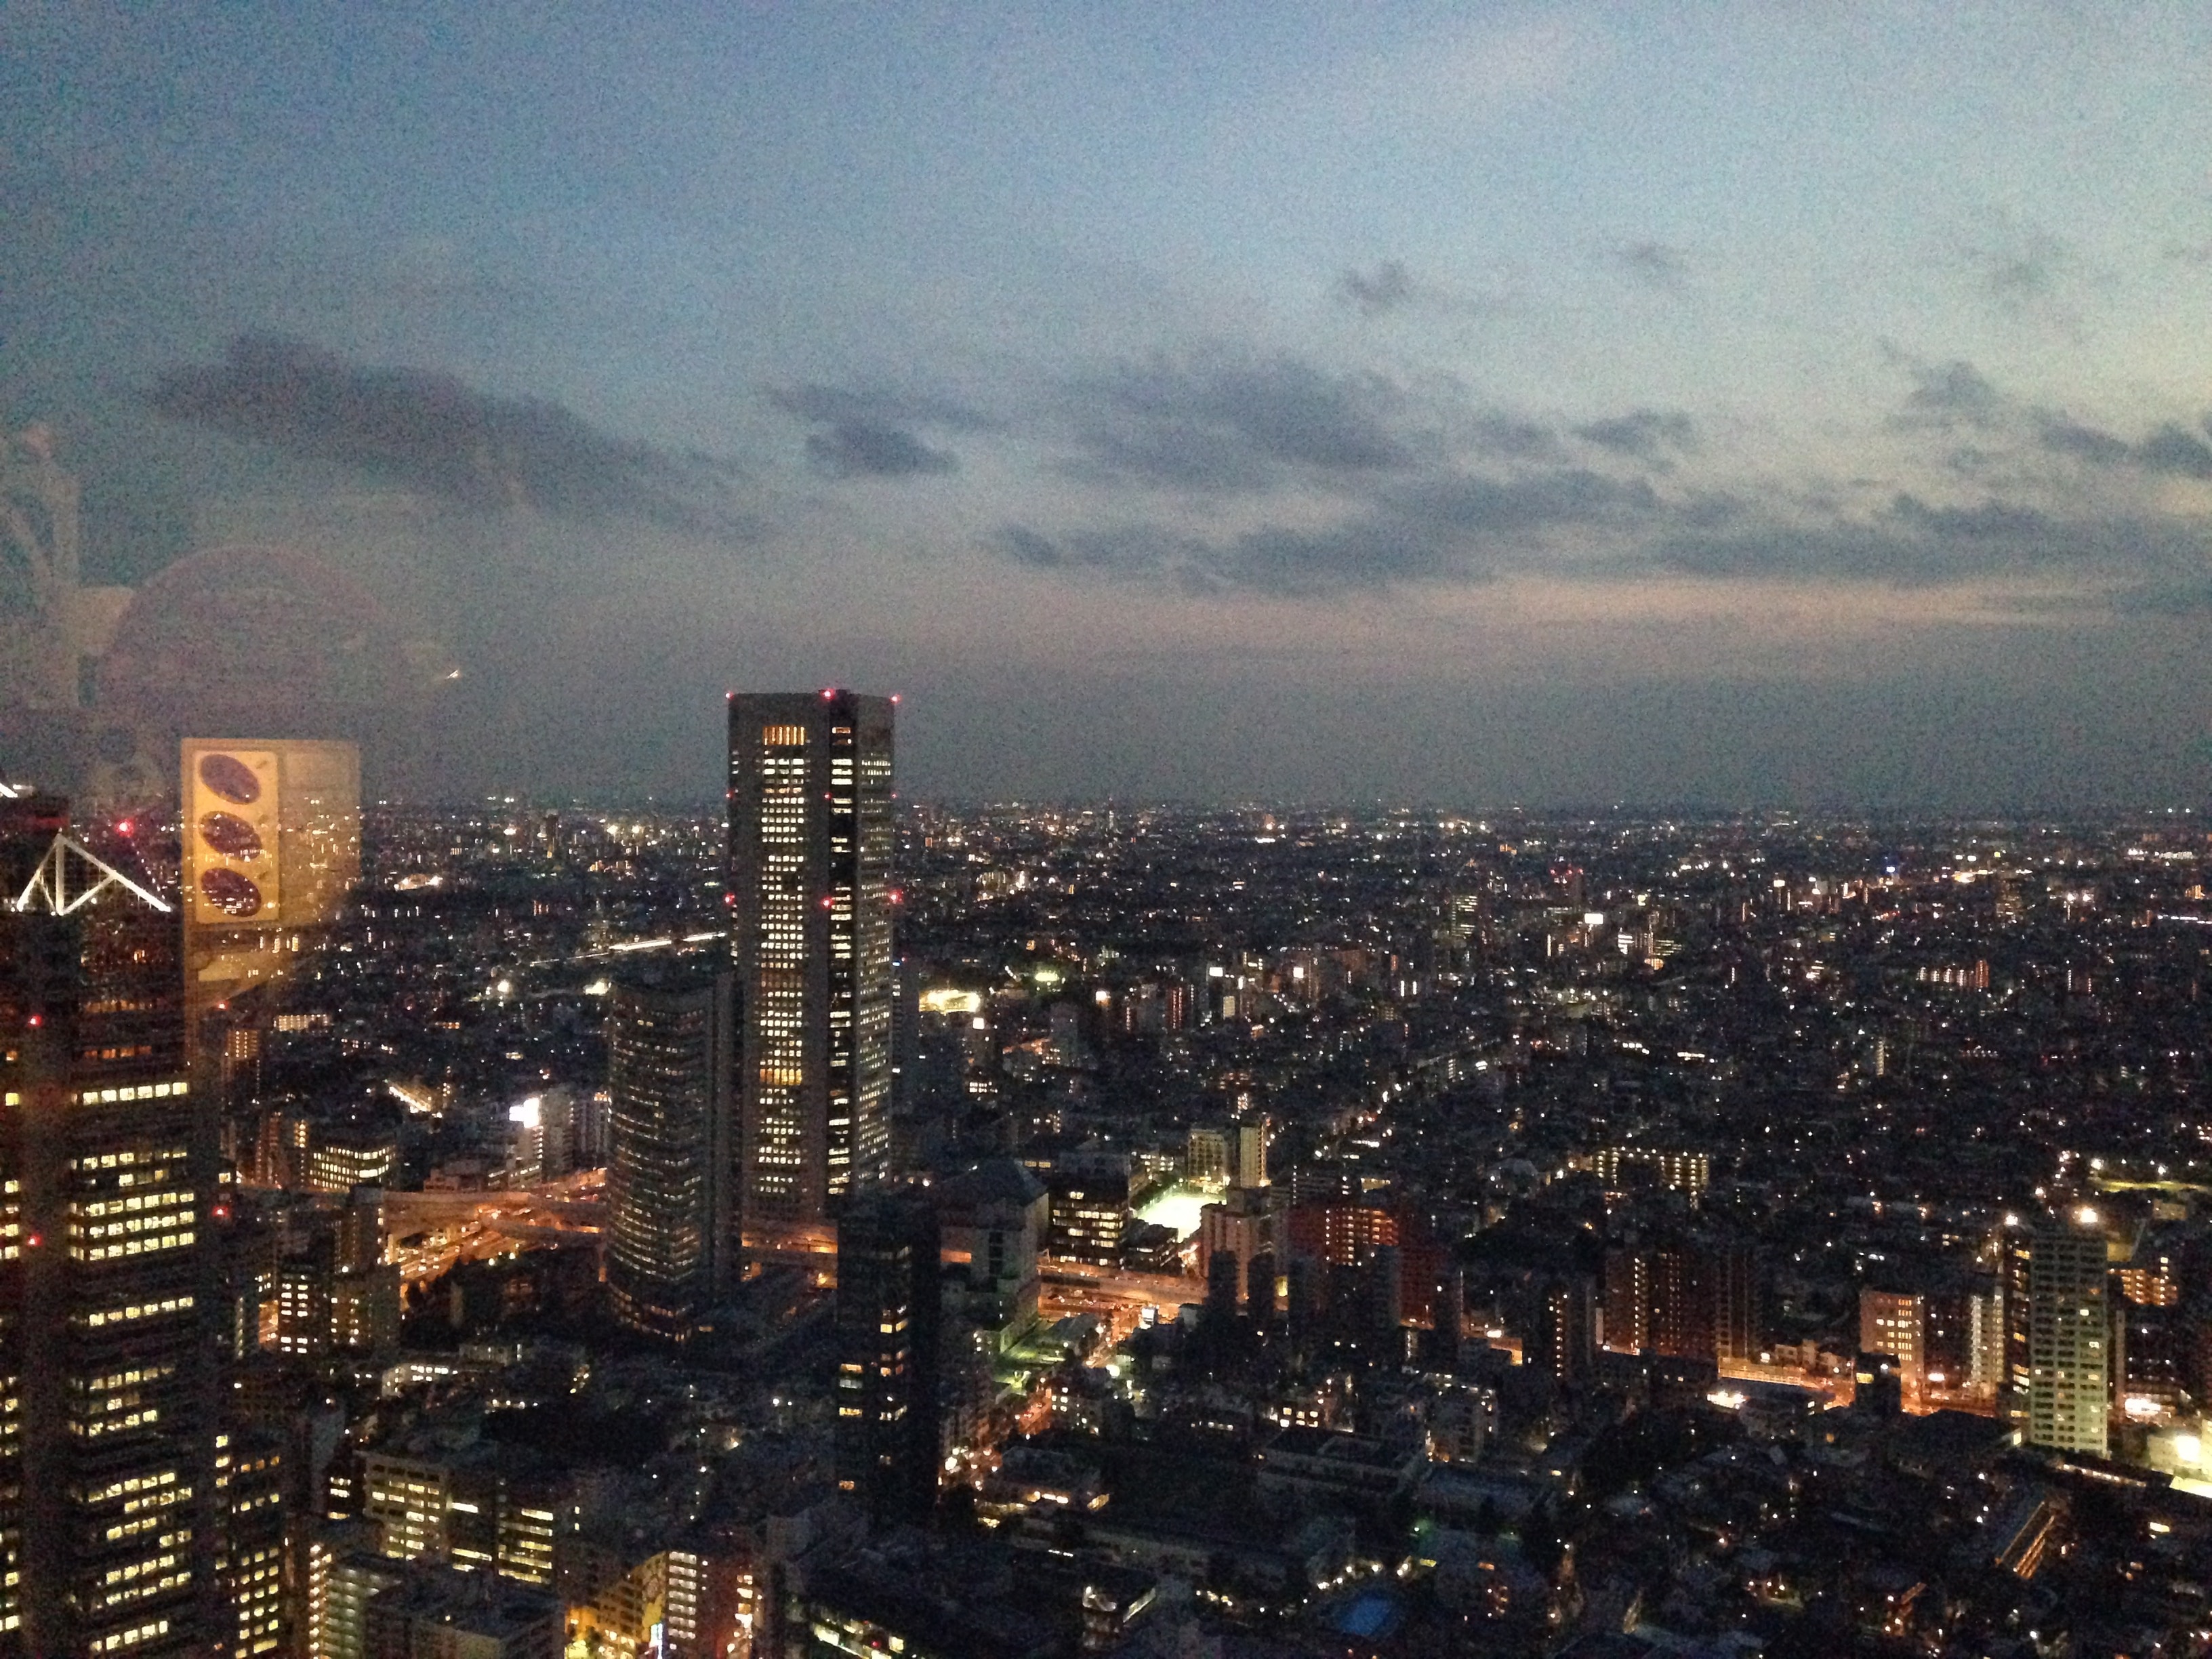 東京都庁第一本庁舎の展望台より望む夜景(南西)